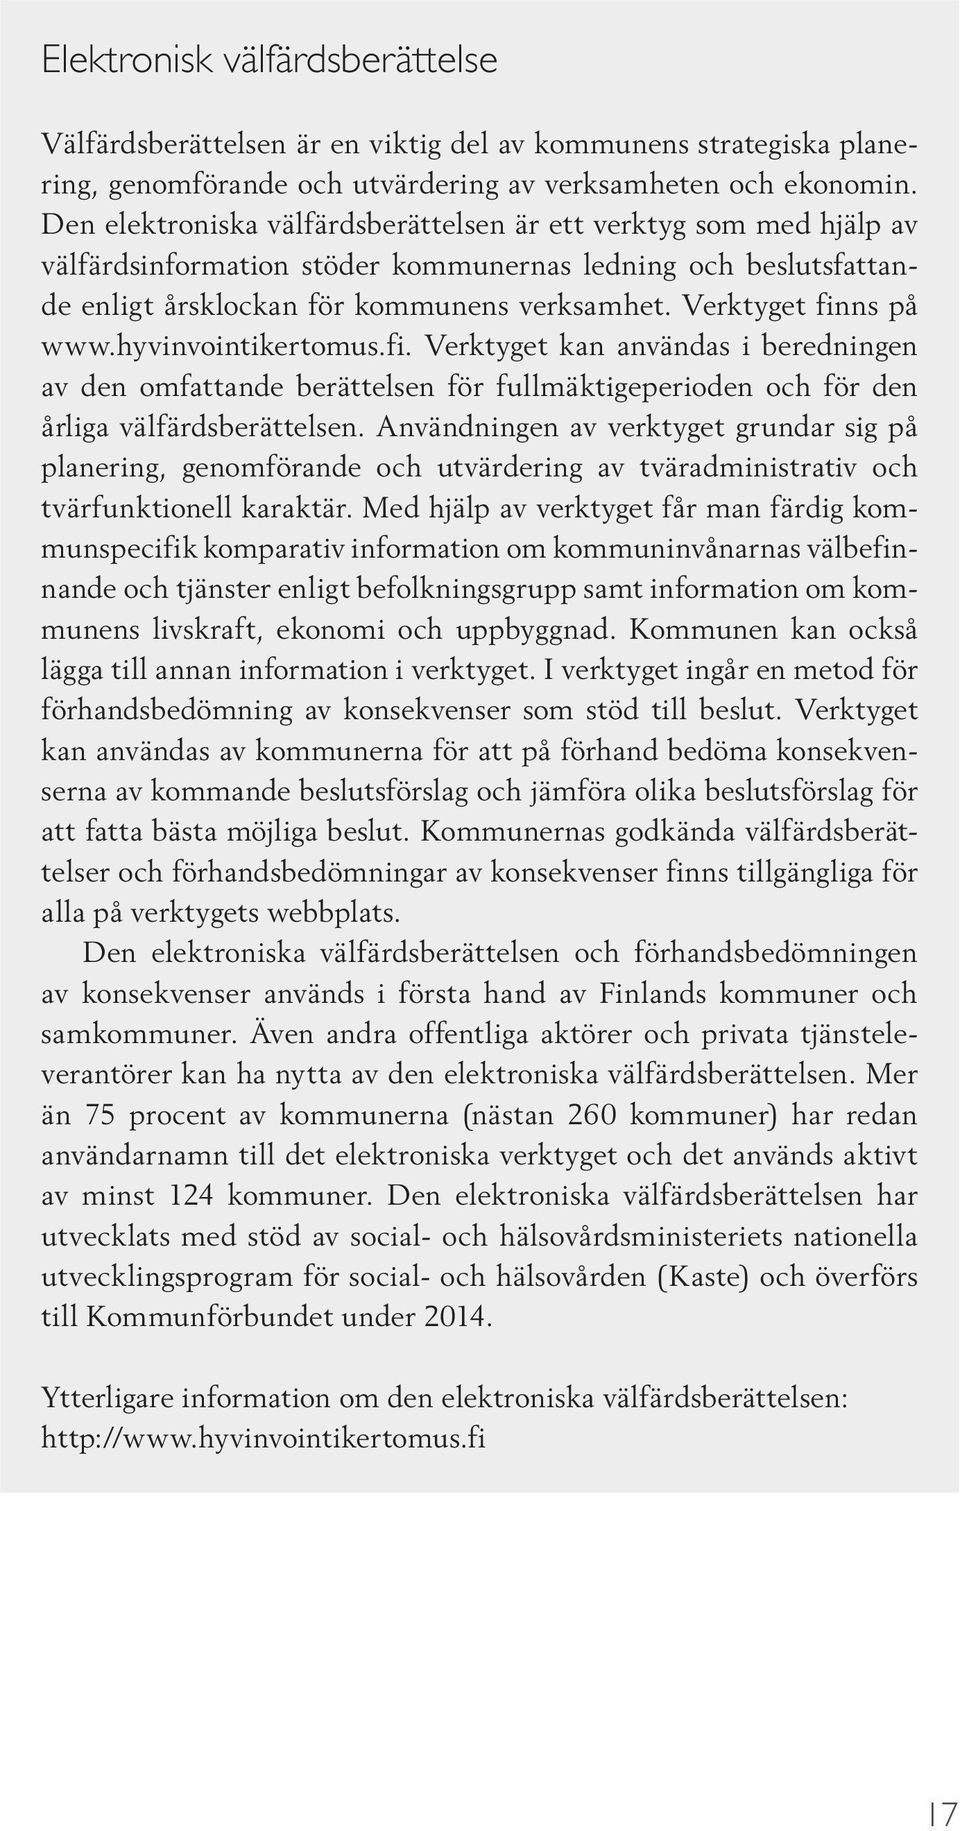 Verktyget finns på www.hyvinvointikertomus.fi. Verktyget kan användas i beredningen av den omfattande berättelsen för fullmäktigeperioden och för den årliga välfärdsberättelsen.